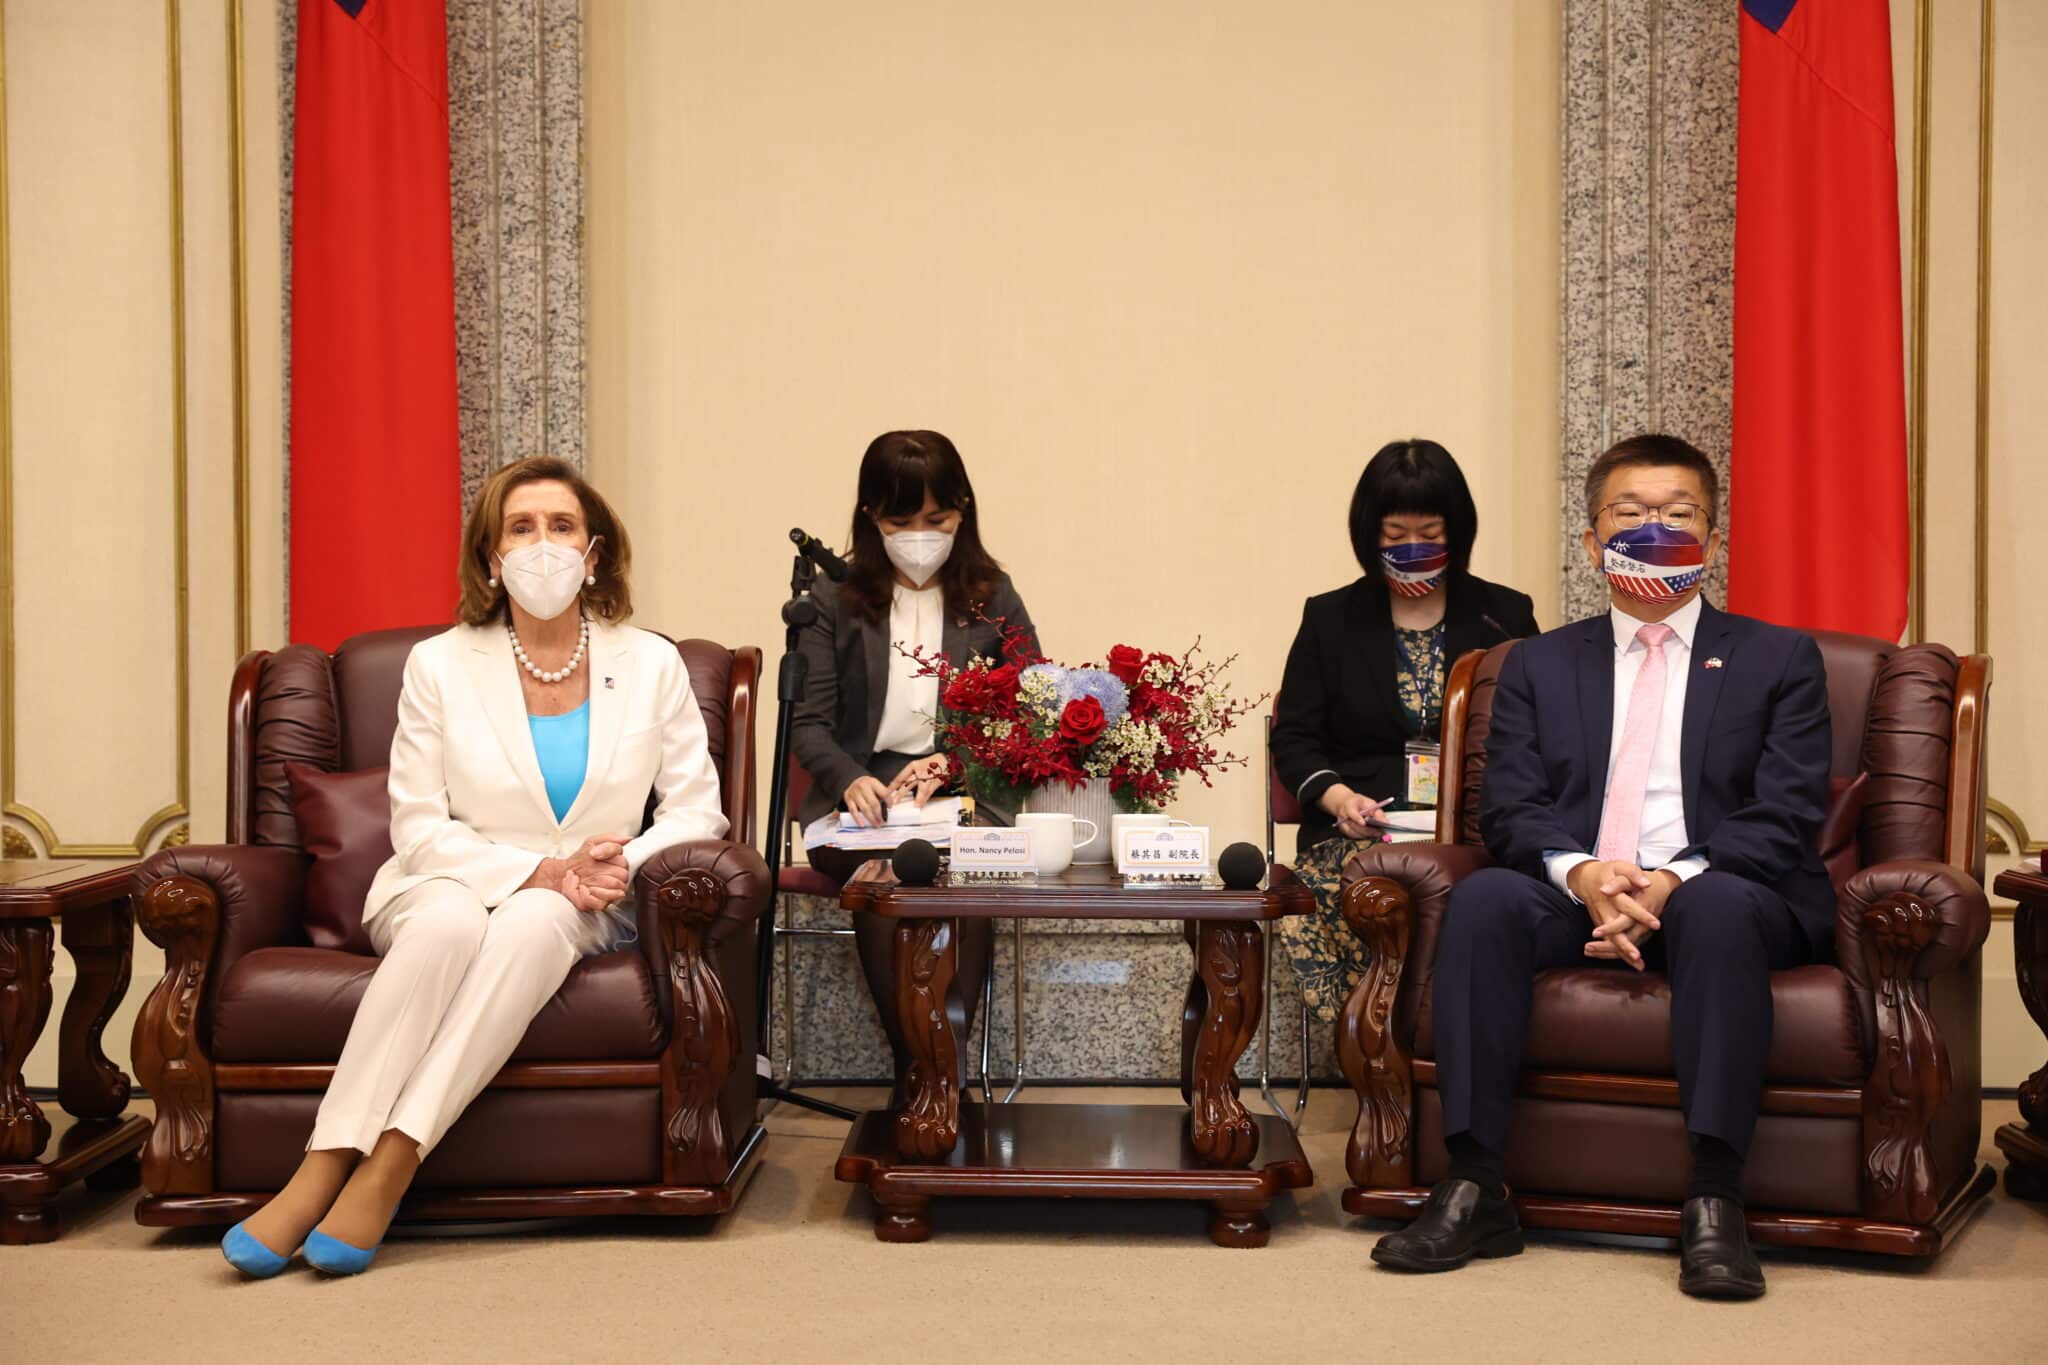 Una delegación de congresistas de EEUU aterriza en Taiwán 12 días después de la visita de Pelosi